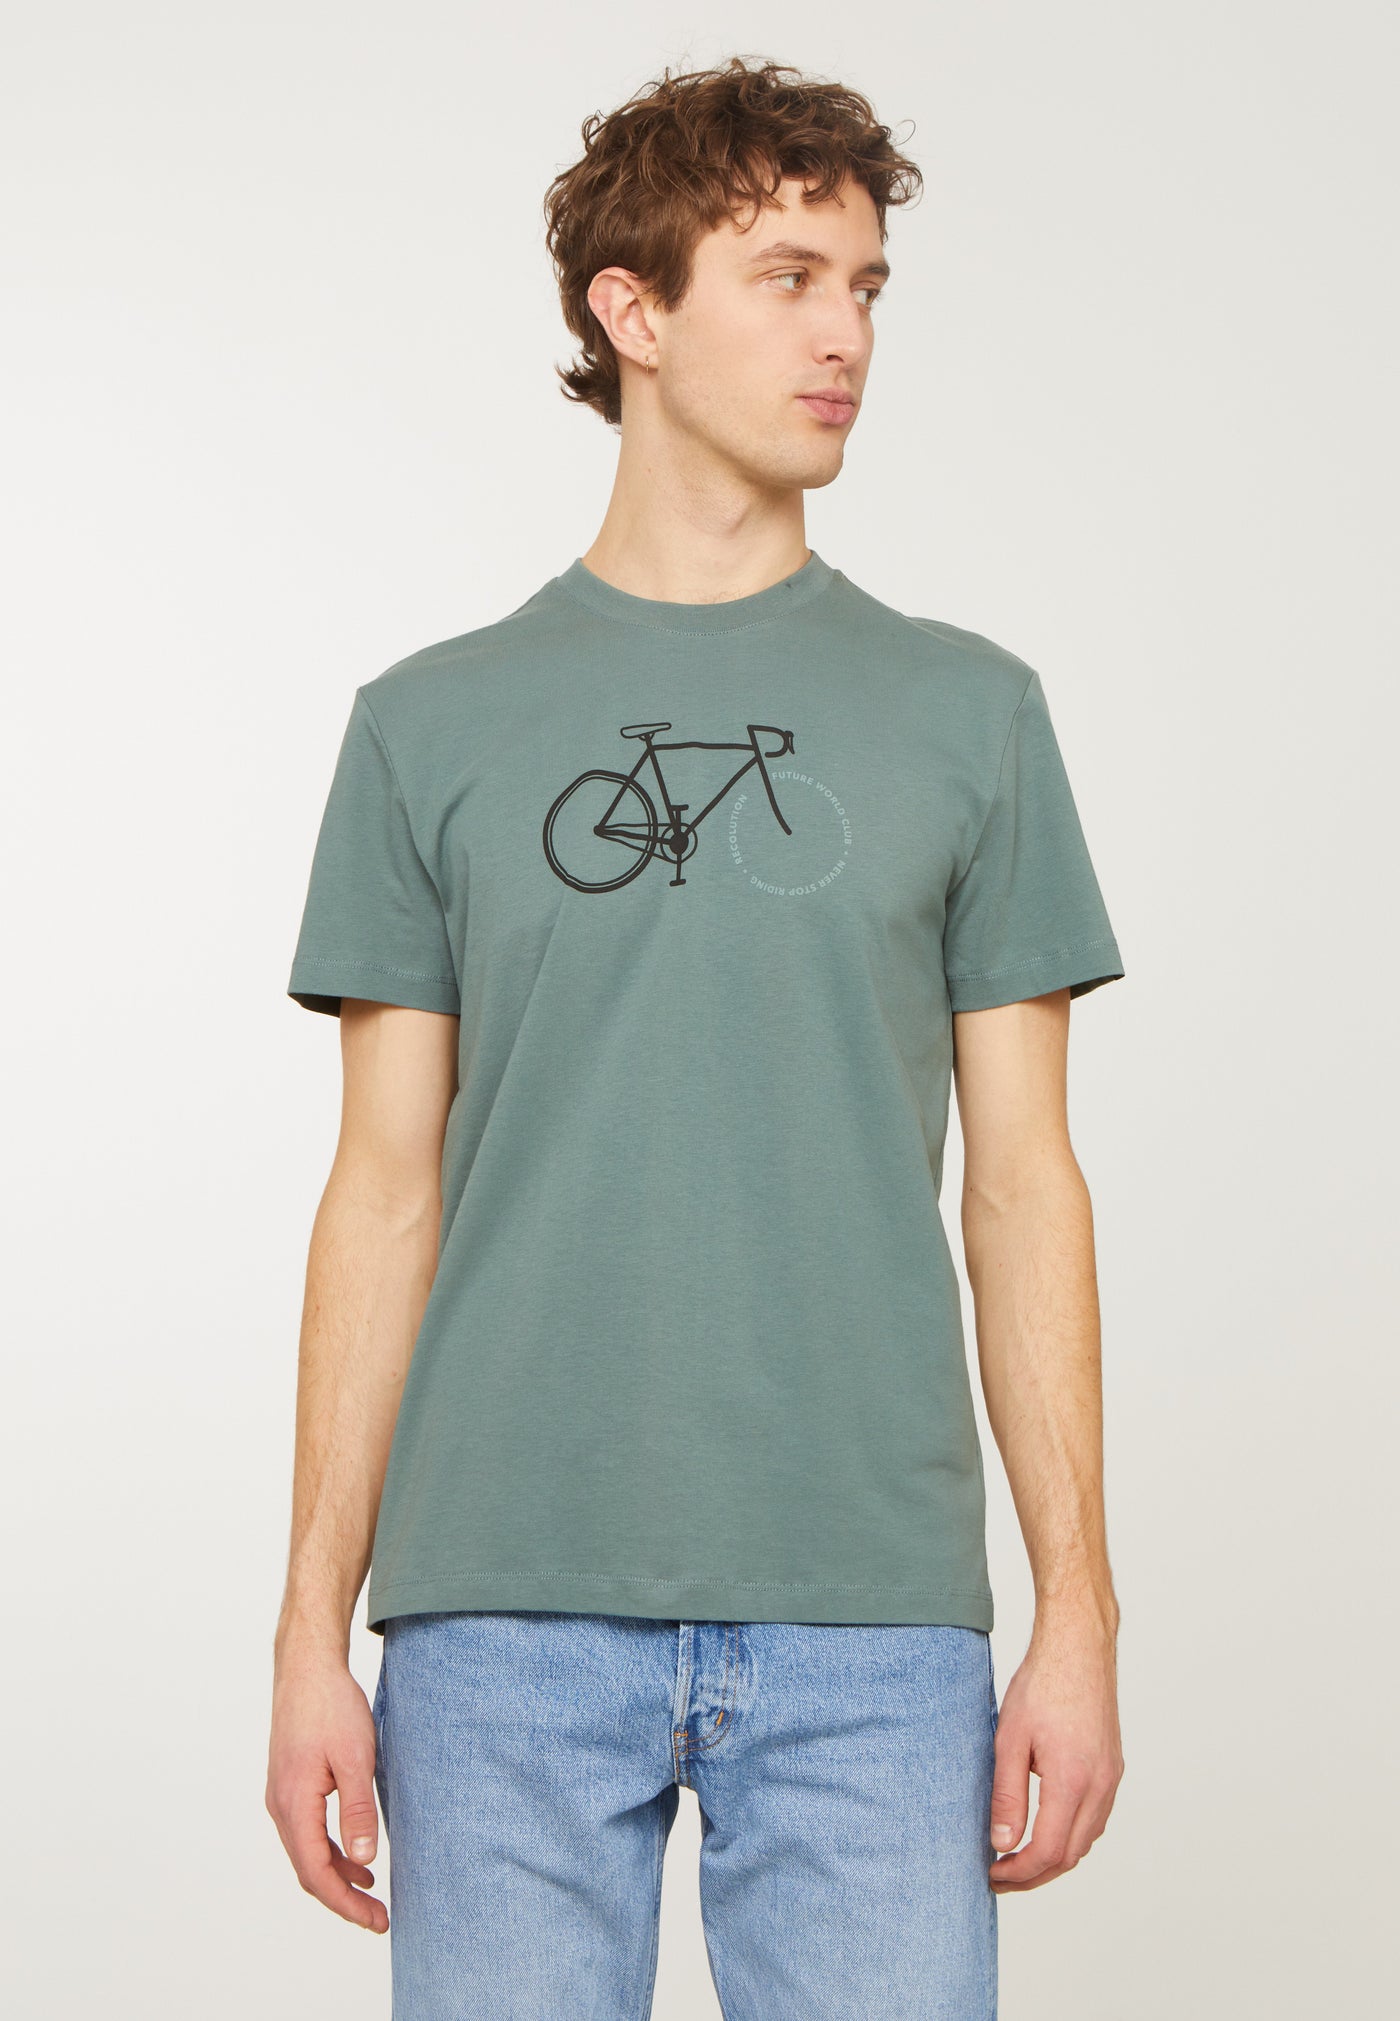 T-Shirt Agave Bike Letters Eukalyptus von Recolution.